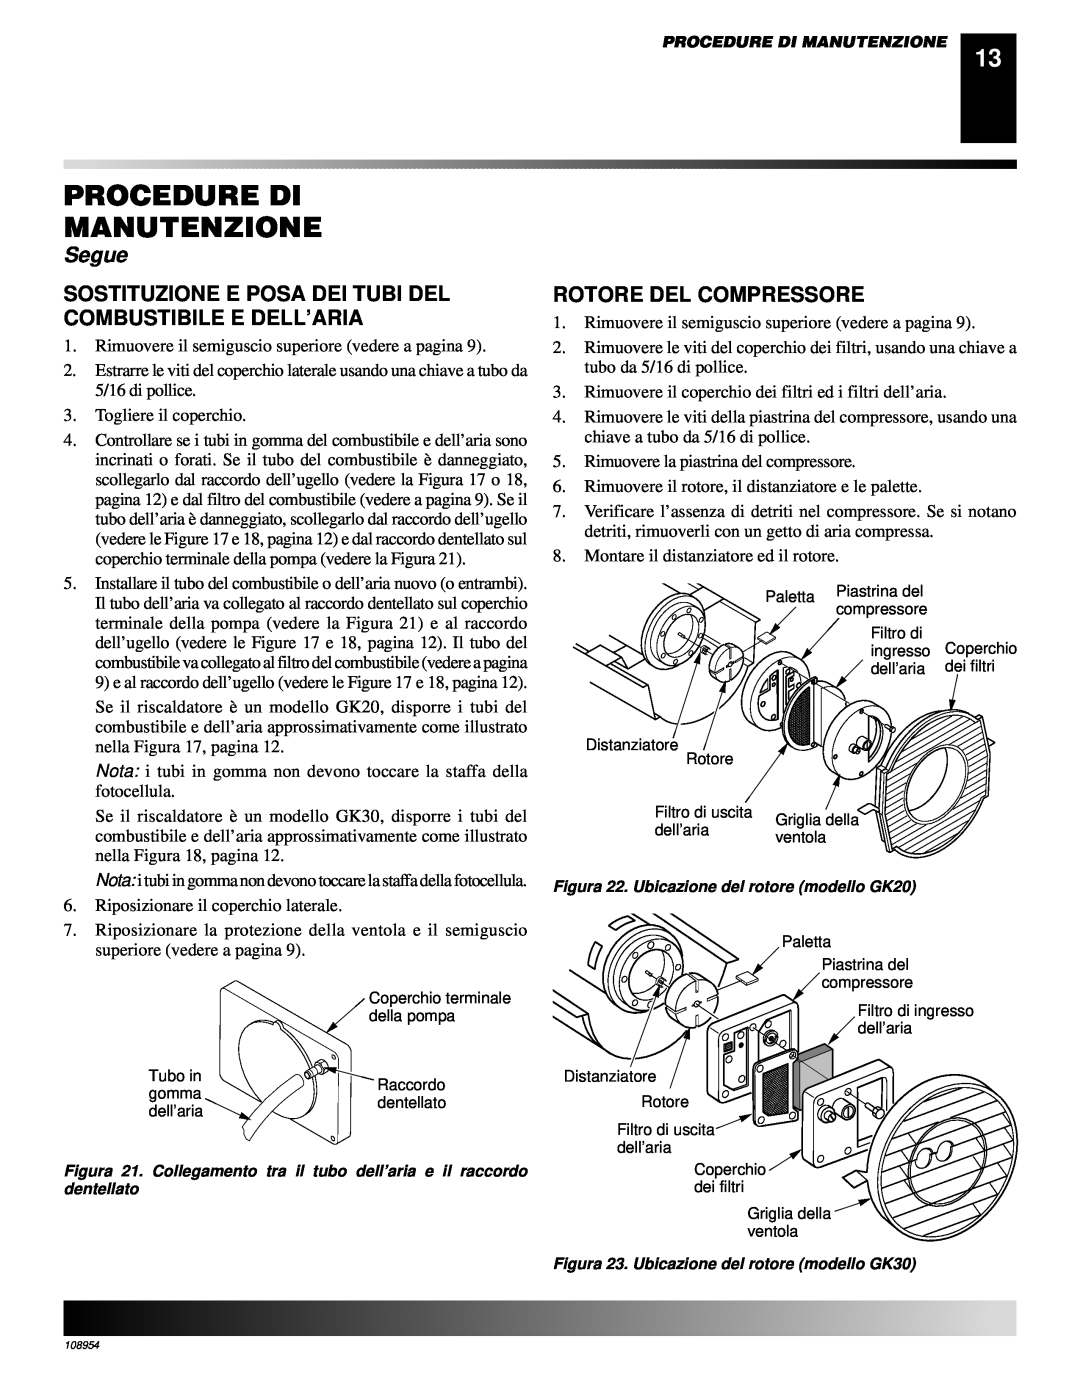 Desa GK30, GK20 owner manual Rotore Del Compressore, Procedure Di Manutenzione, Segue 